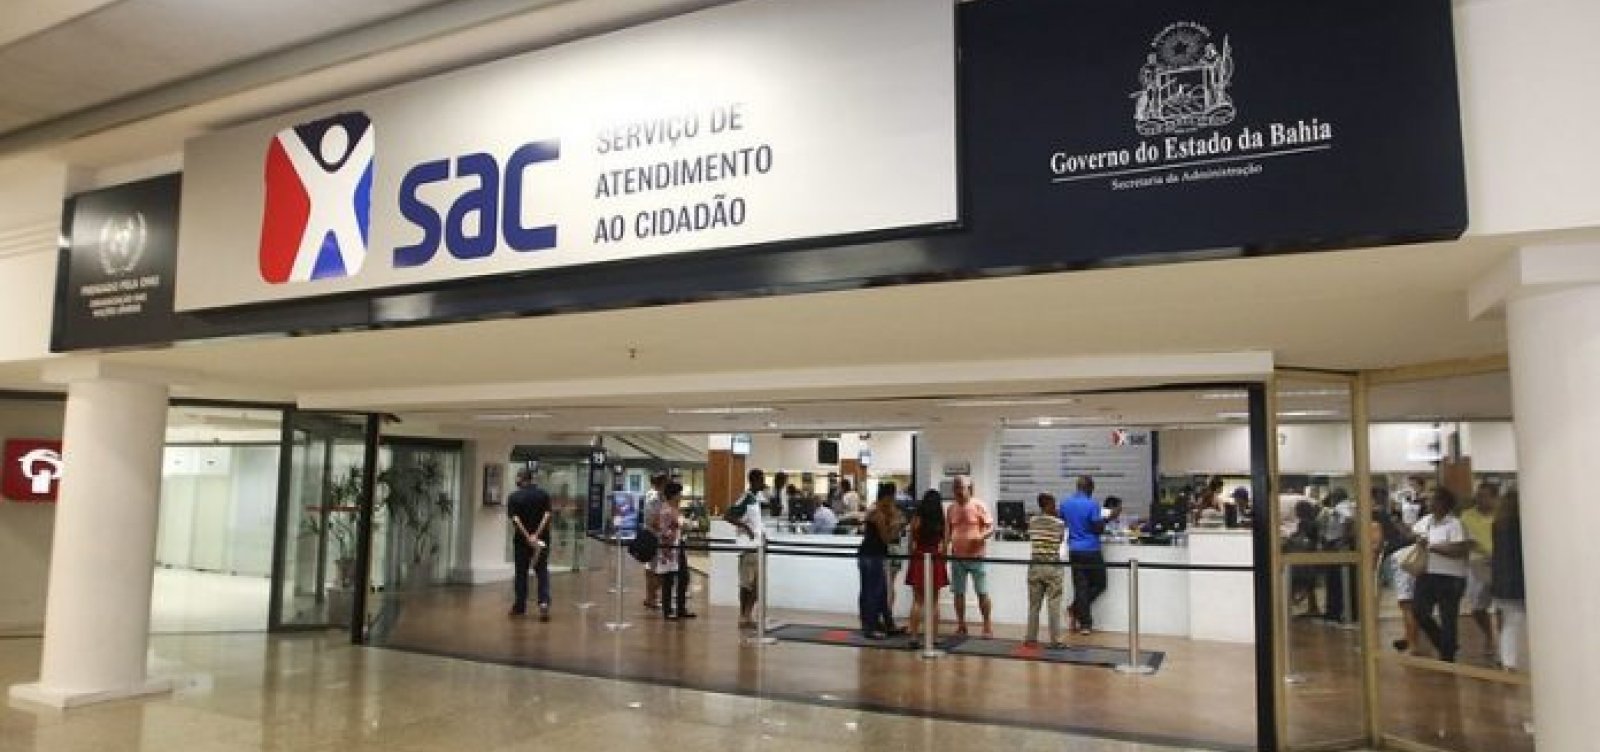 SAC dispensa agendamento para retirada de documentos em Salvador e interior da Bahia